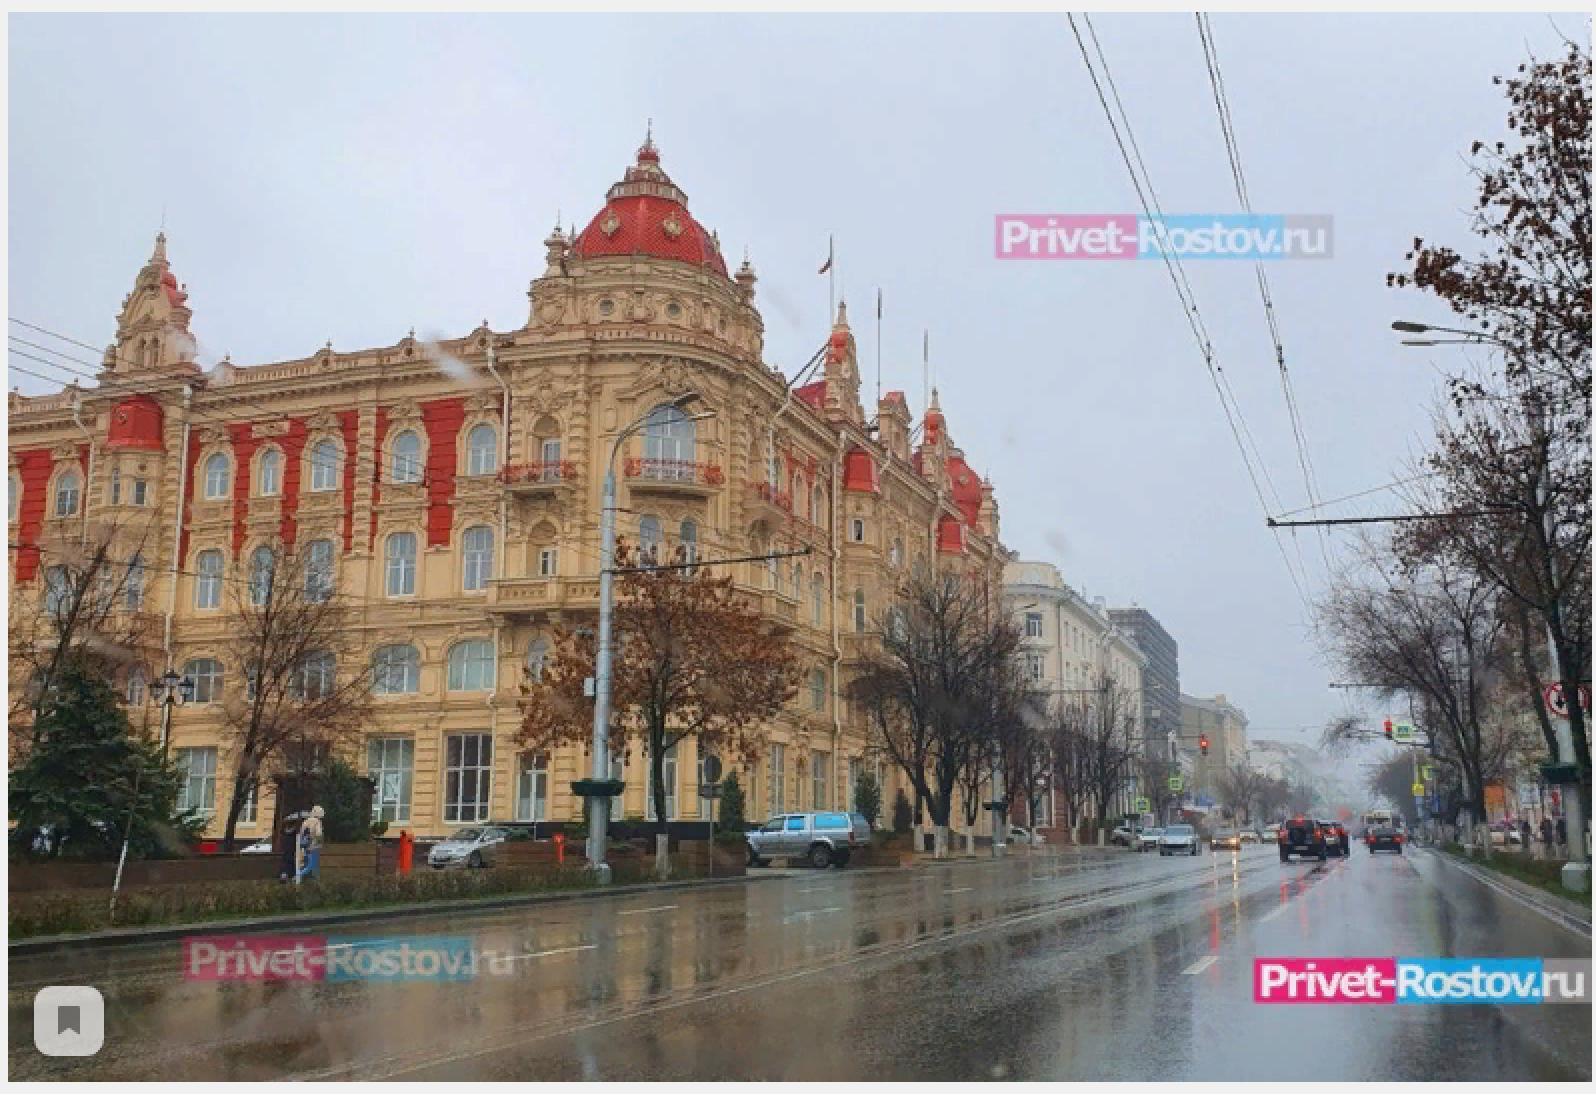 Фото с инета: Здание бывшего Ростовского обкома КПСС с балконом на третьем этаже.